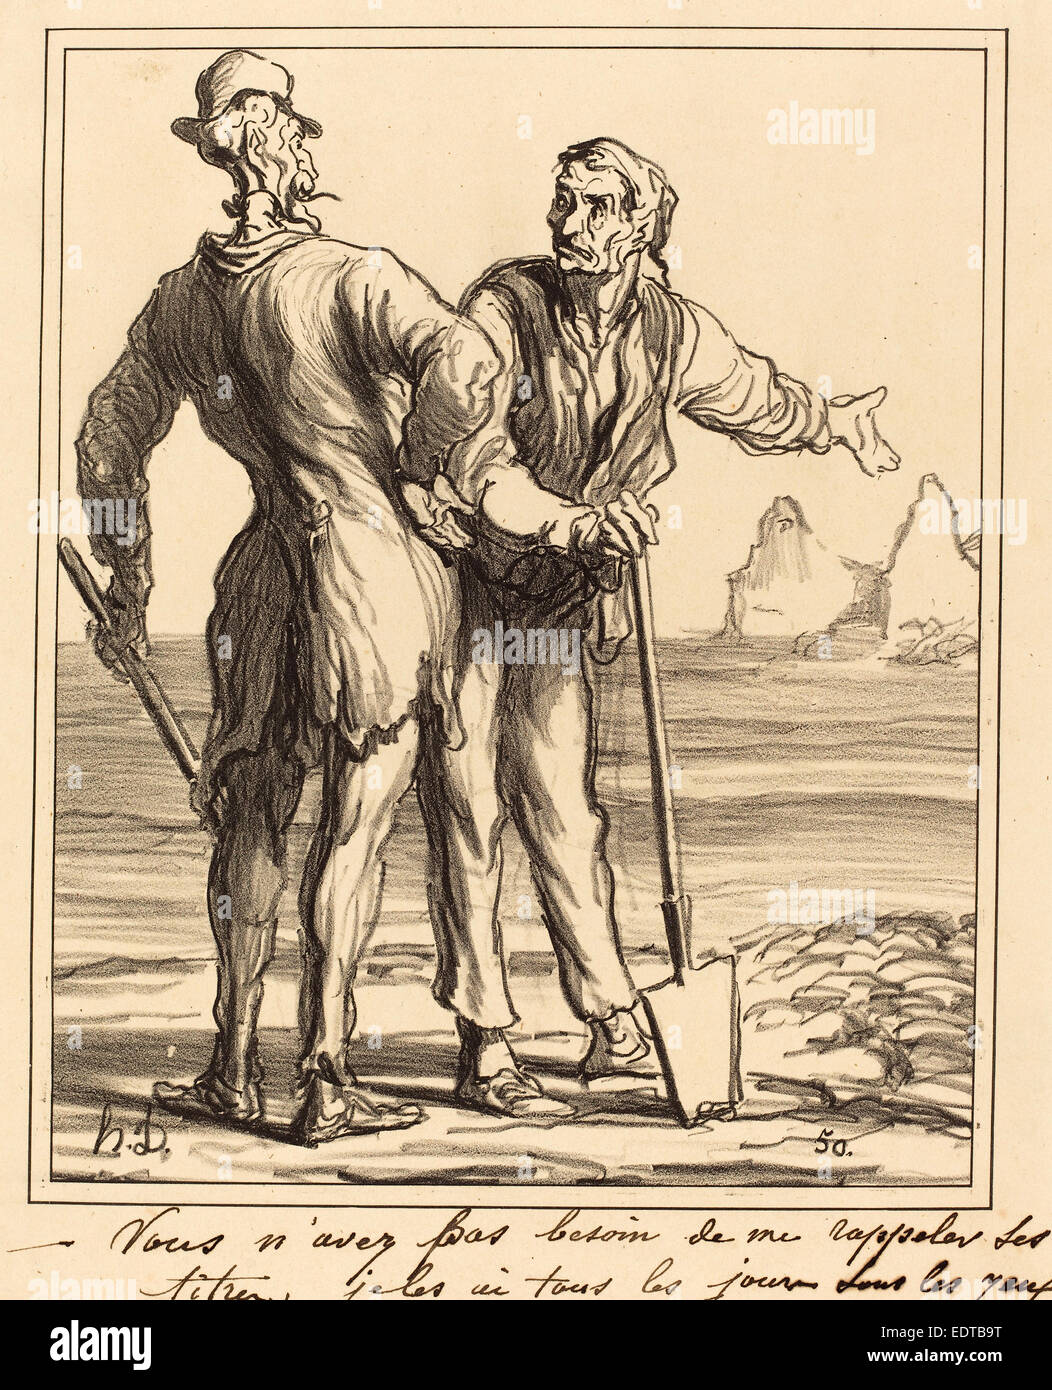 Honoré Daumier (Französisch, 1808-1879), Vous n'avez Pas Besoin de mir Rappeler ses Titer, 1871, Lithographie Stockfoto